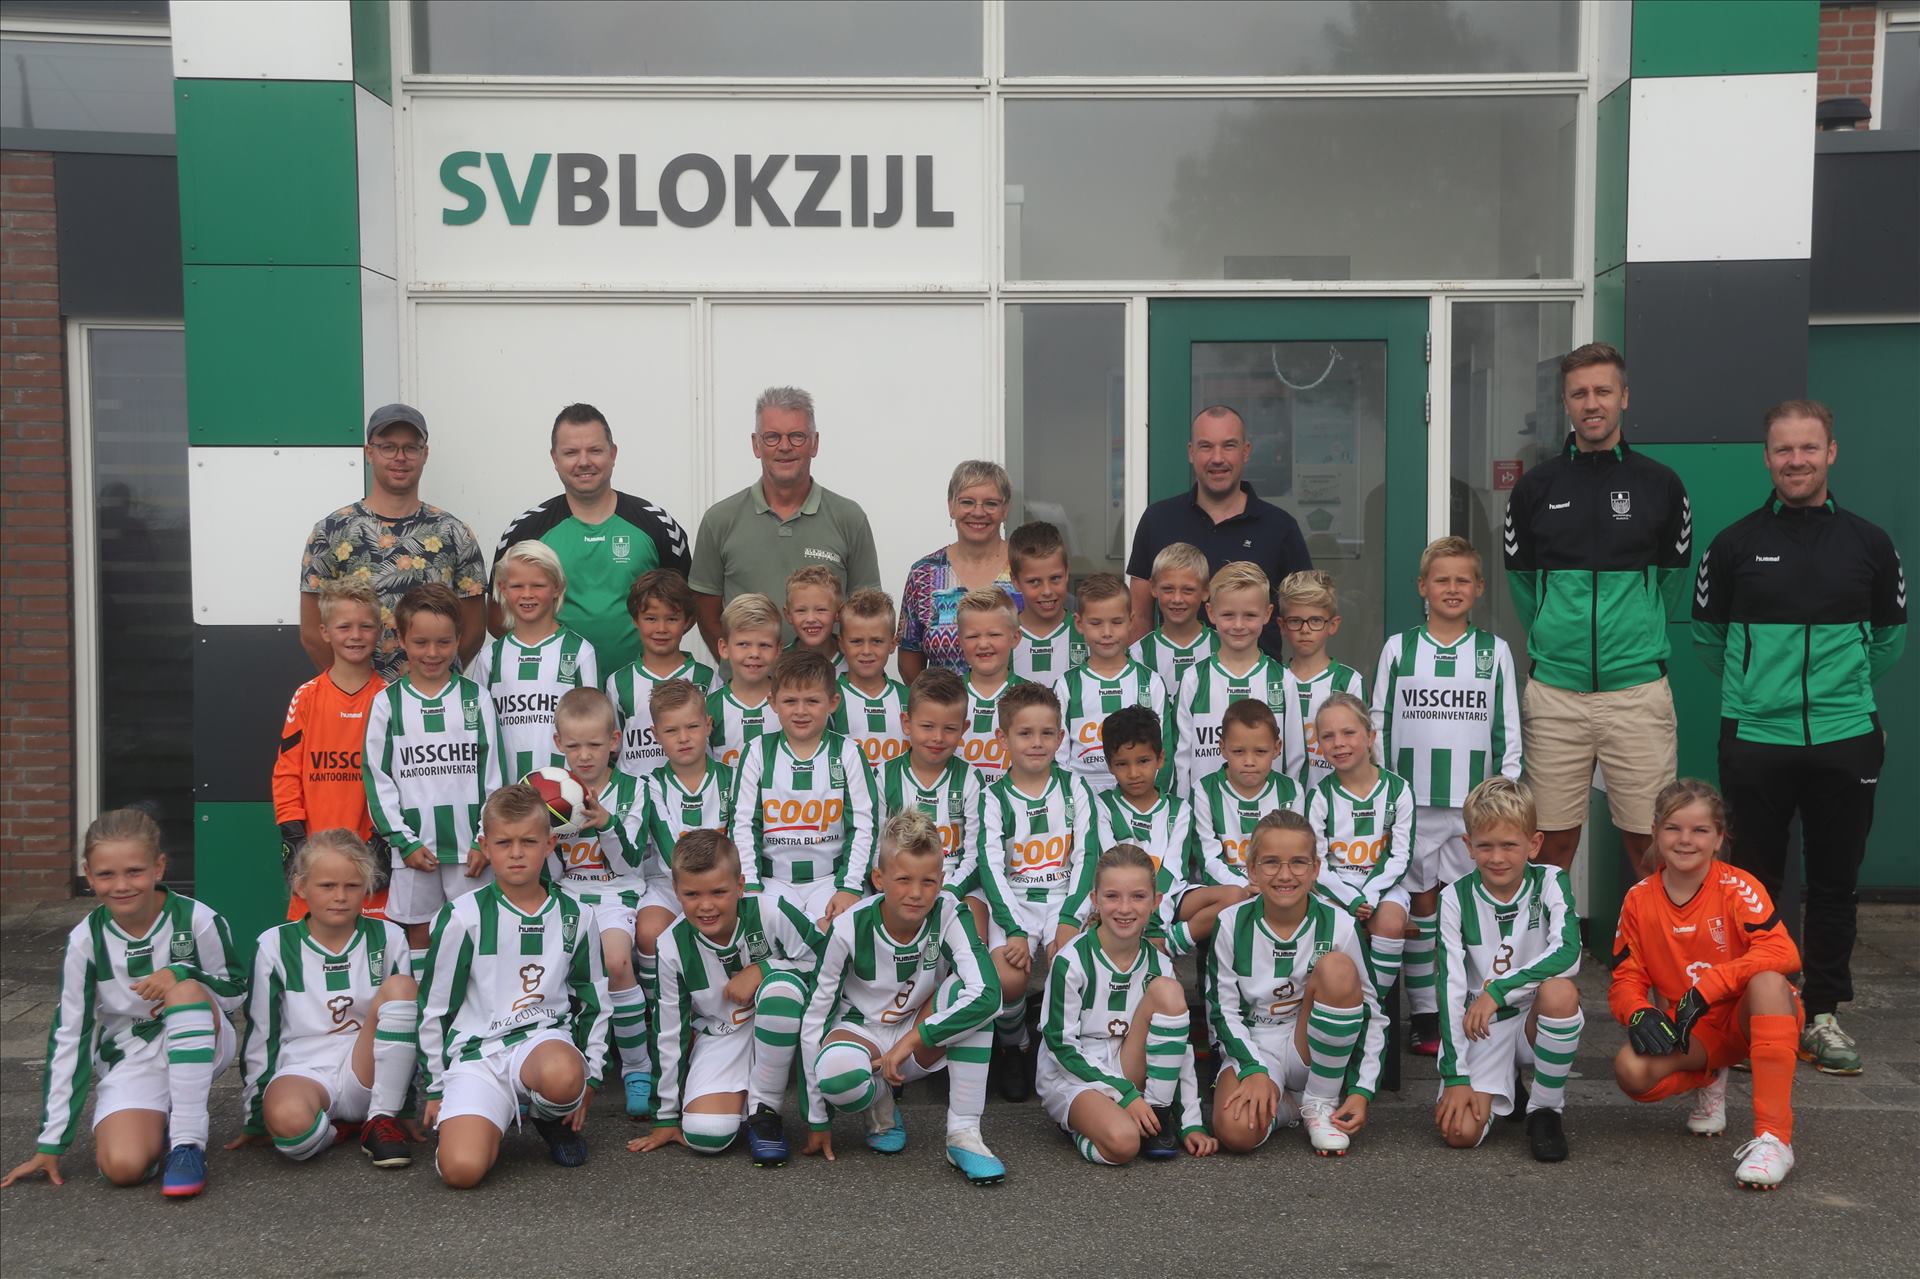 Nieuwe Look voor de Toekomstige Kampioenen van SV Blokzijl!